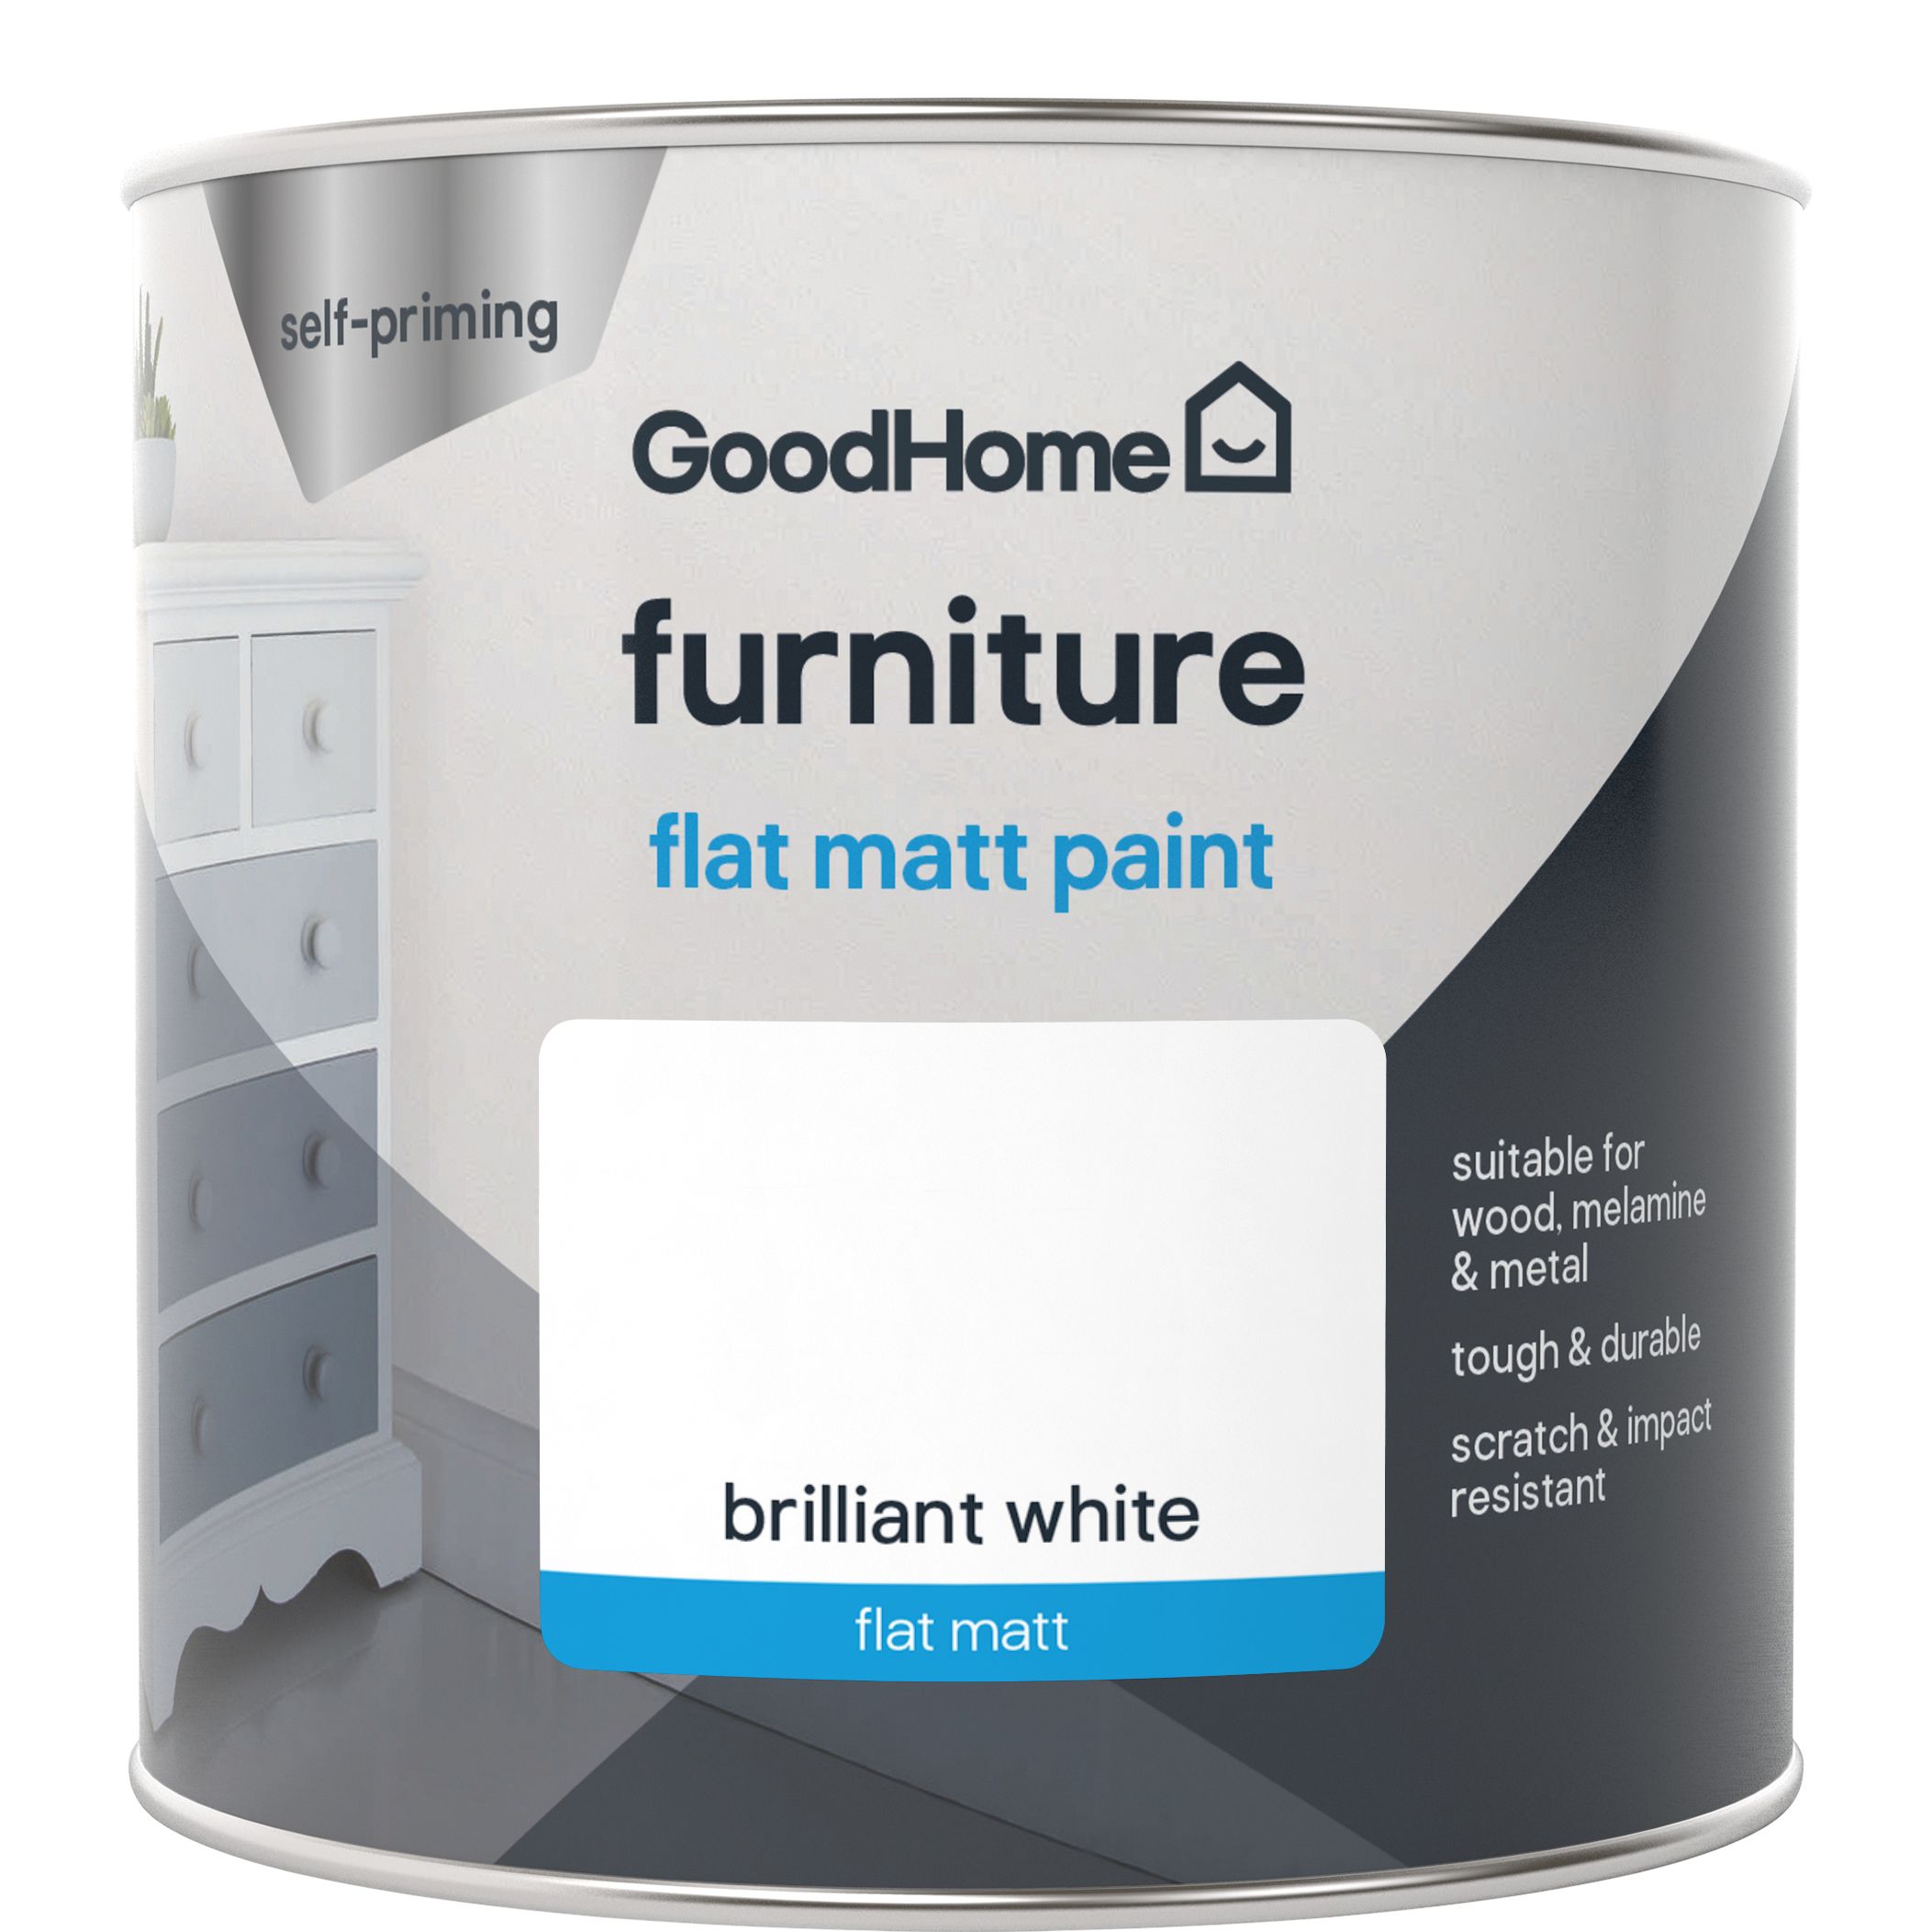 GoodHome North pole (Brilliant white) Flat matt Furniture paint, 500ml